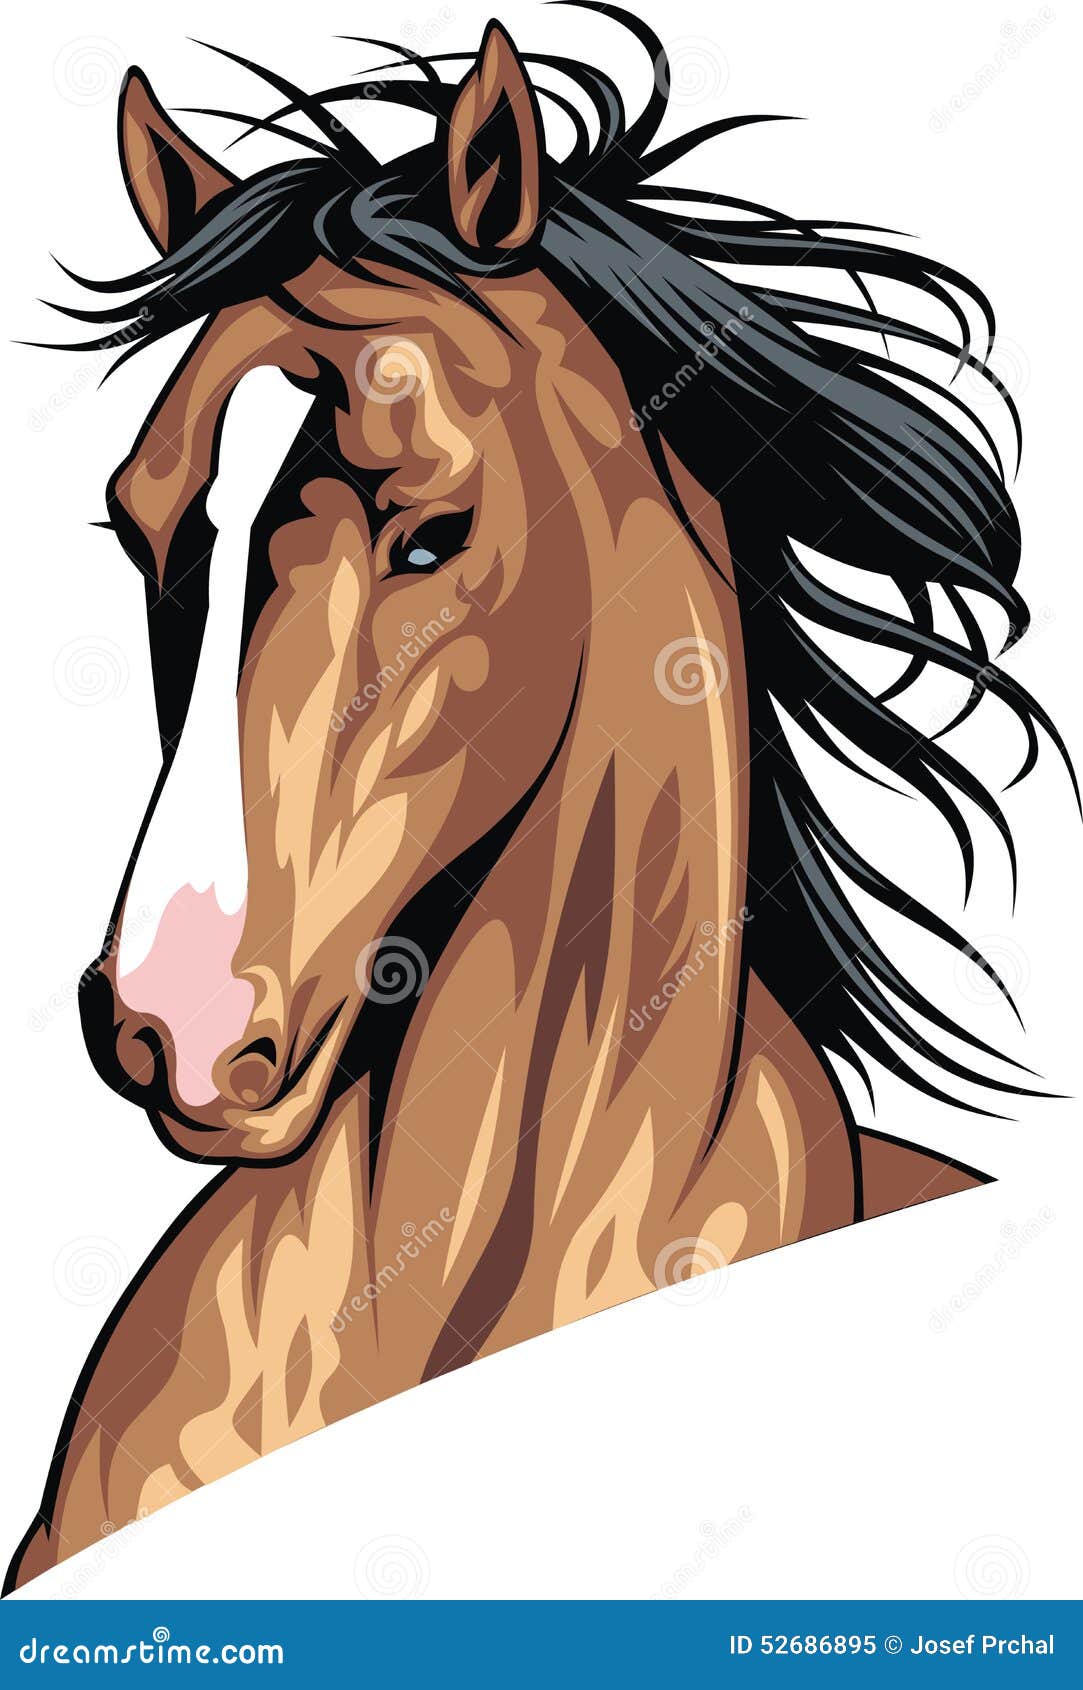 Cavalo, cavalo, cabeça de cavalo png